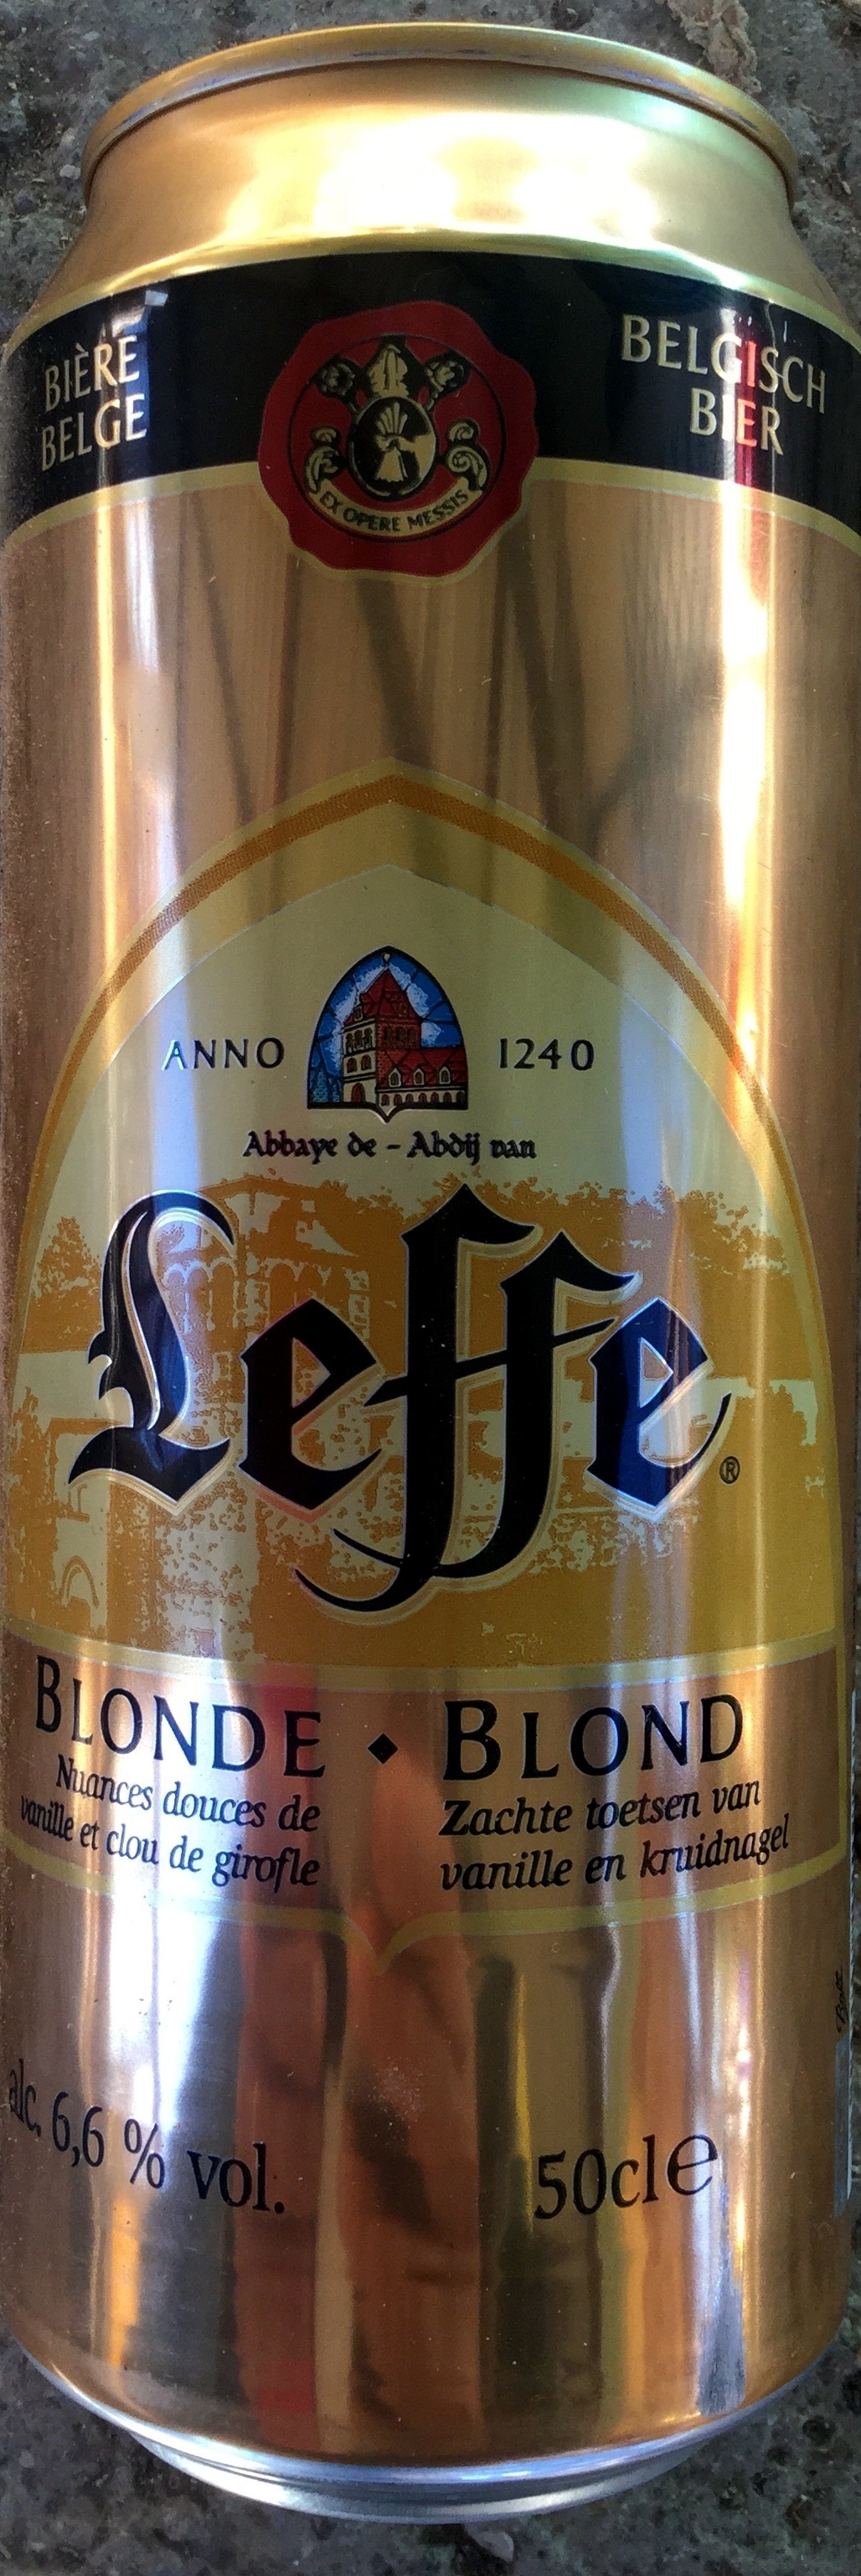 Leffe,AB-InBev - Product - fr